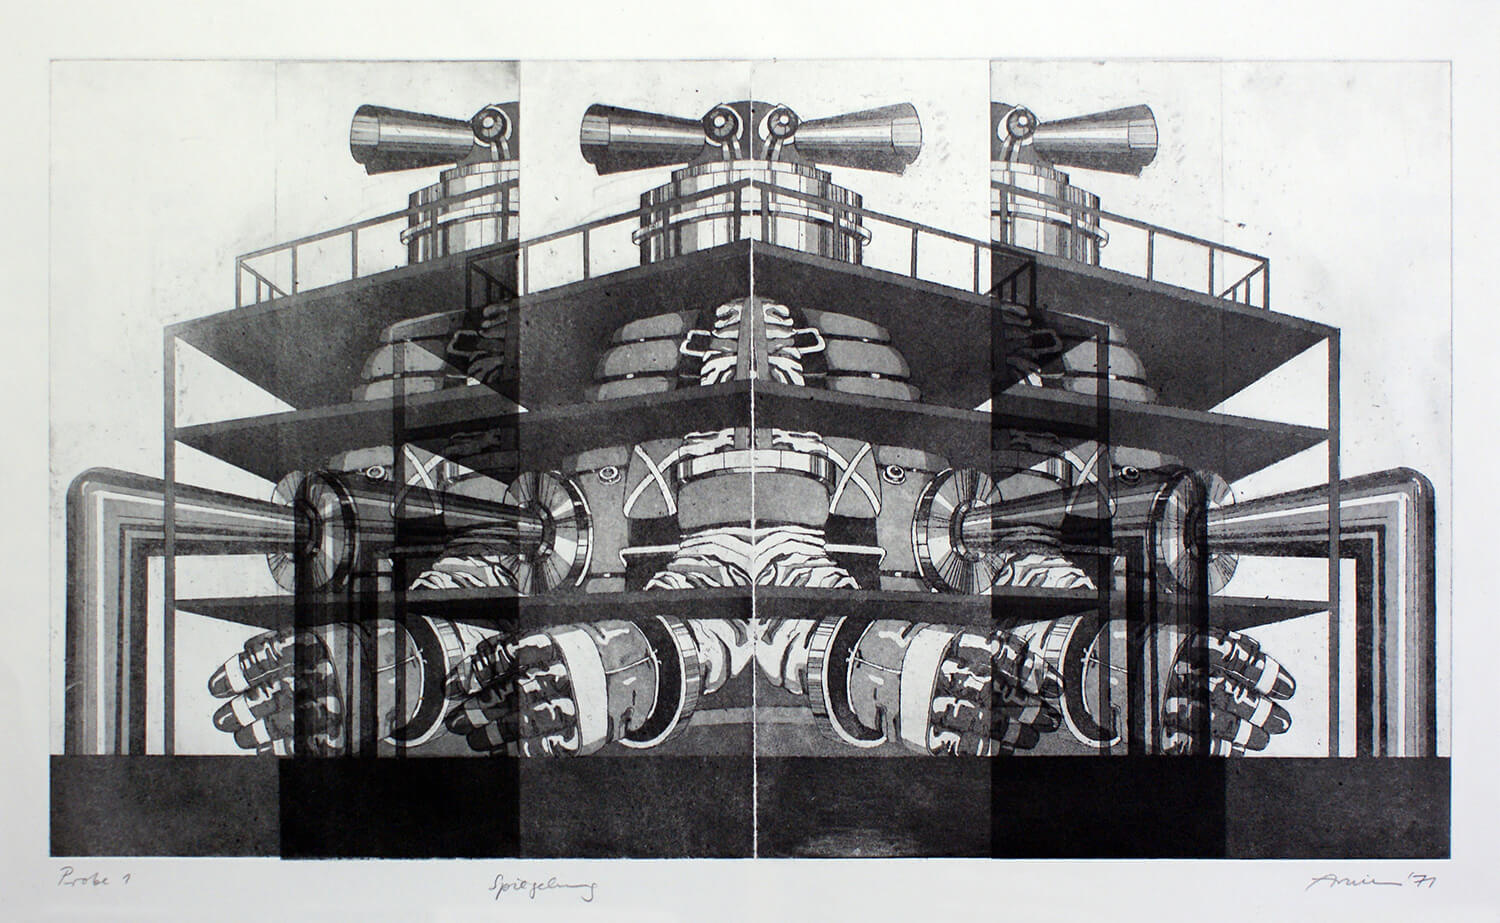 Bettina von Arnim, Spiegelung, 1971, Radierung, Probe 1, Bild: 33 x 59 cm, Blatt: 60 x 80 cm